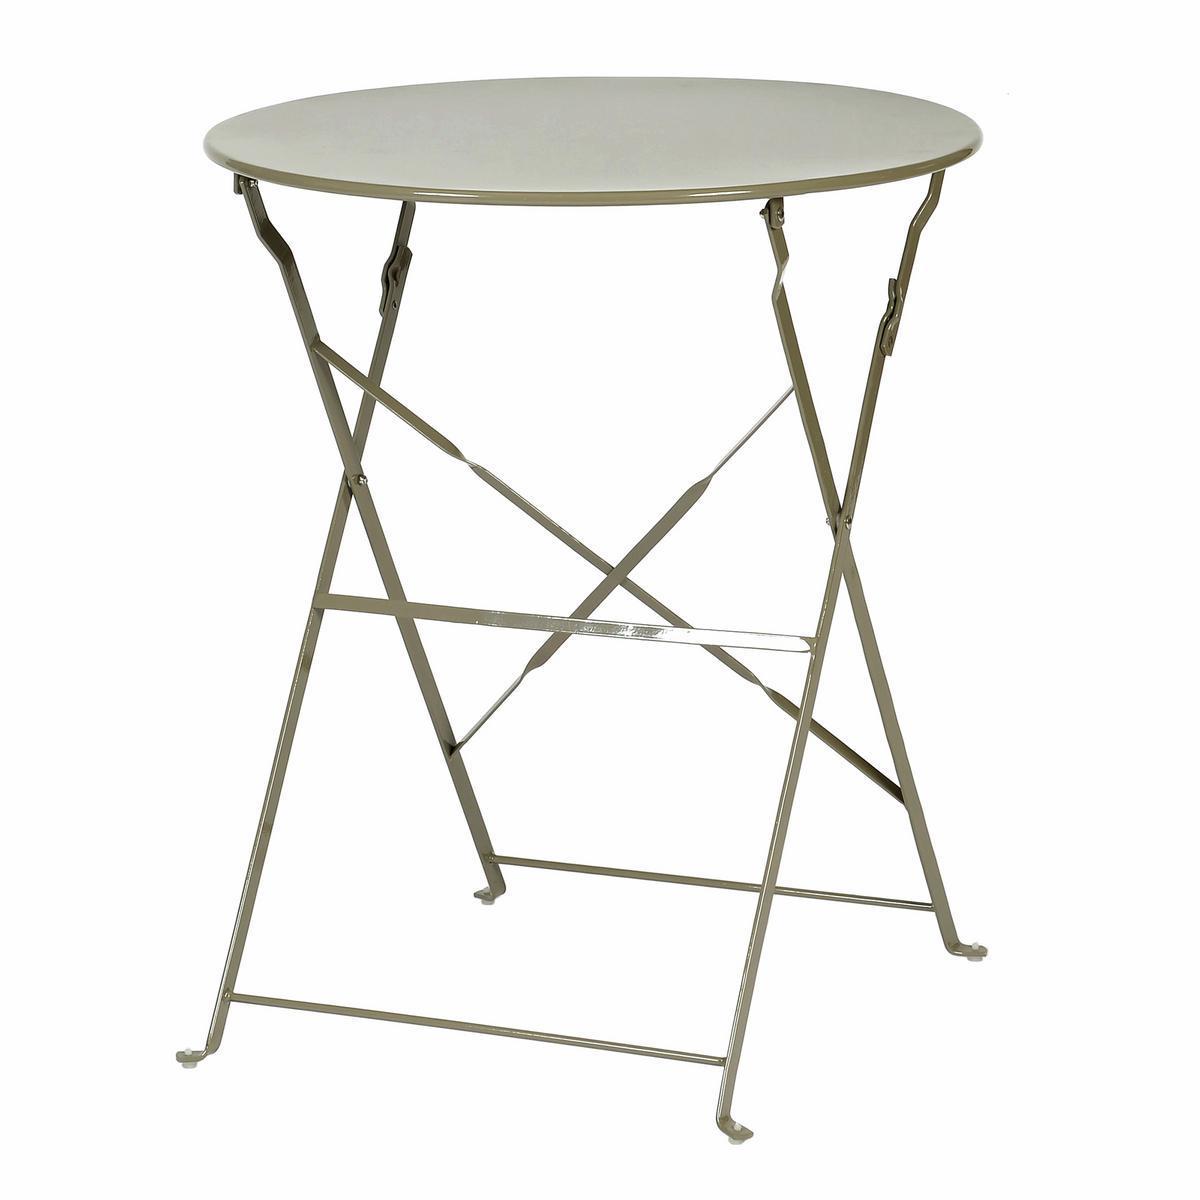 Table pliante DIANA - Acier - Ø 60 cm x H 71 cm - Marron taupe